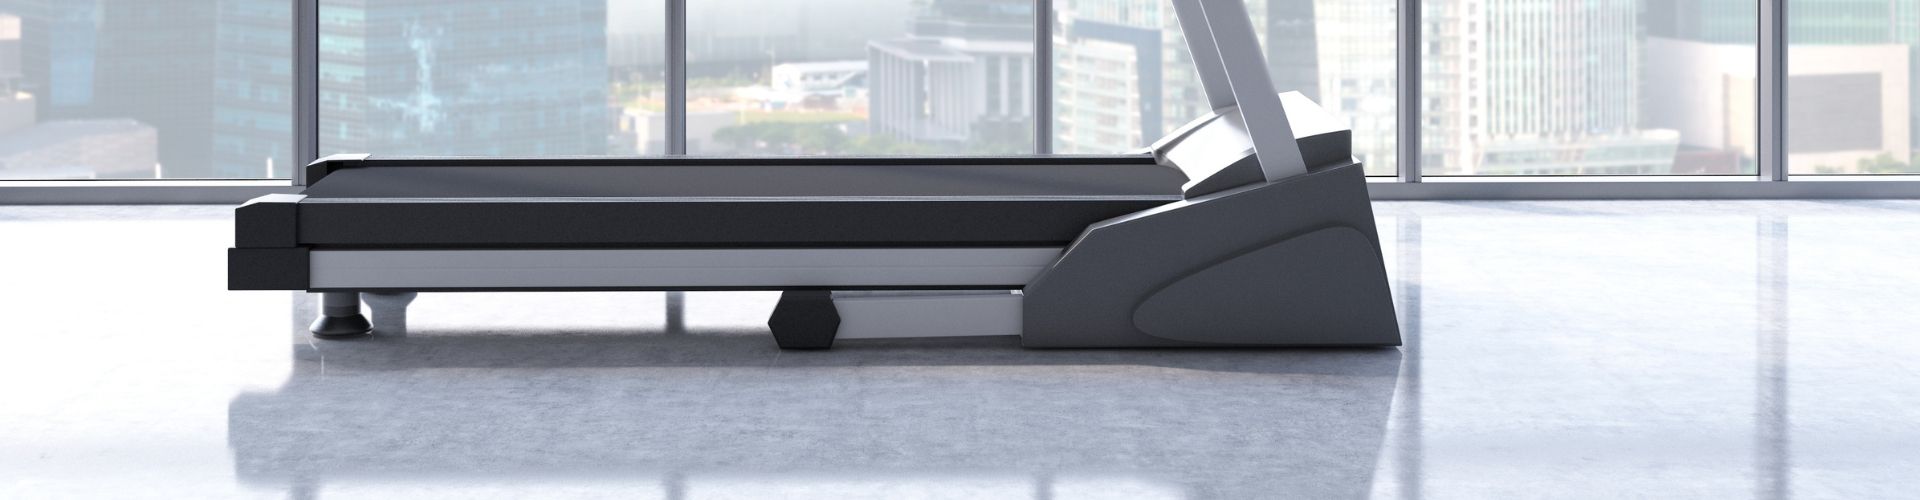 treadmill mat for hardwood floors